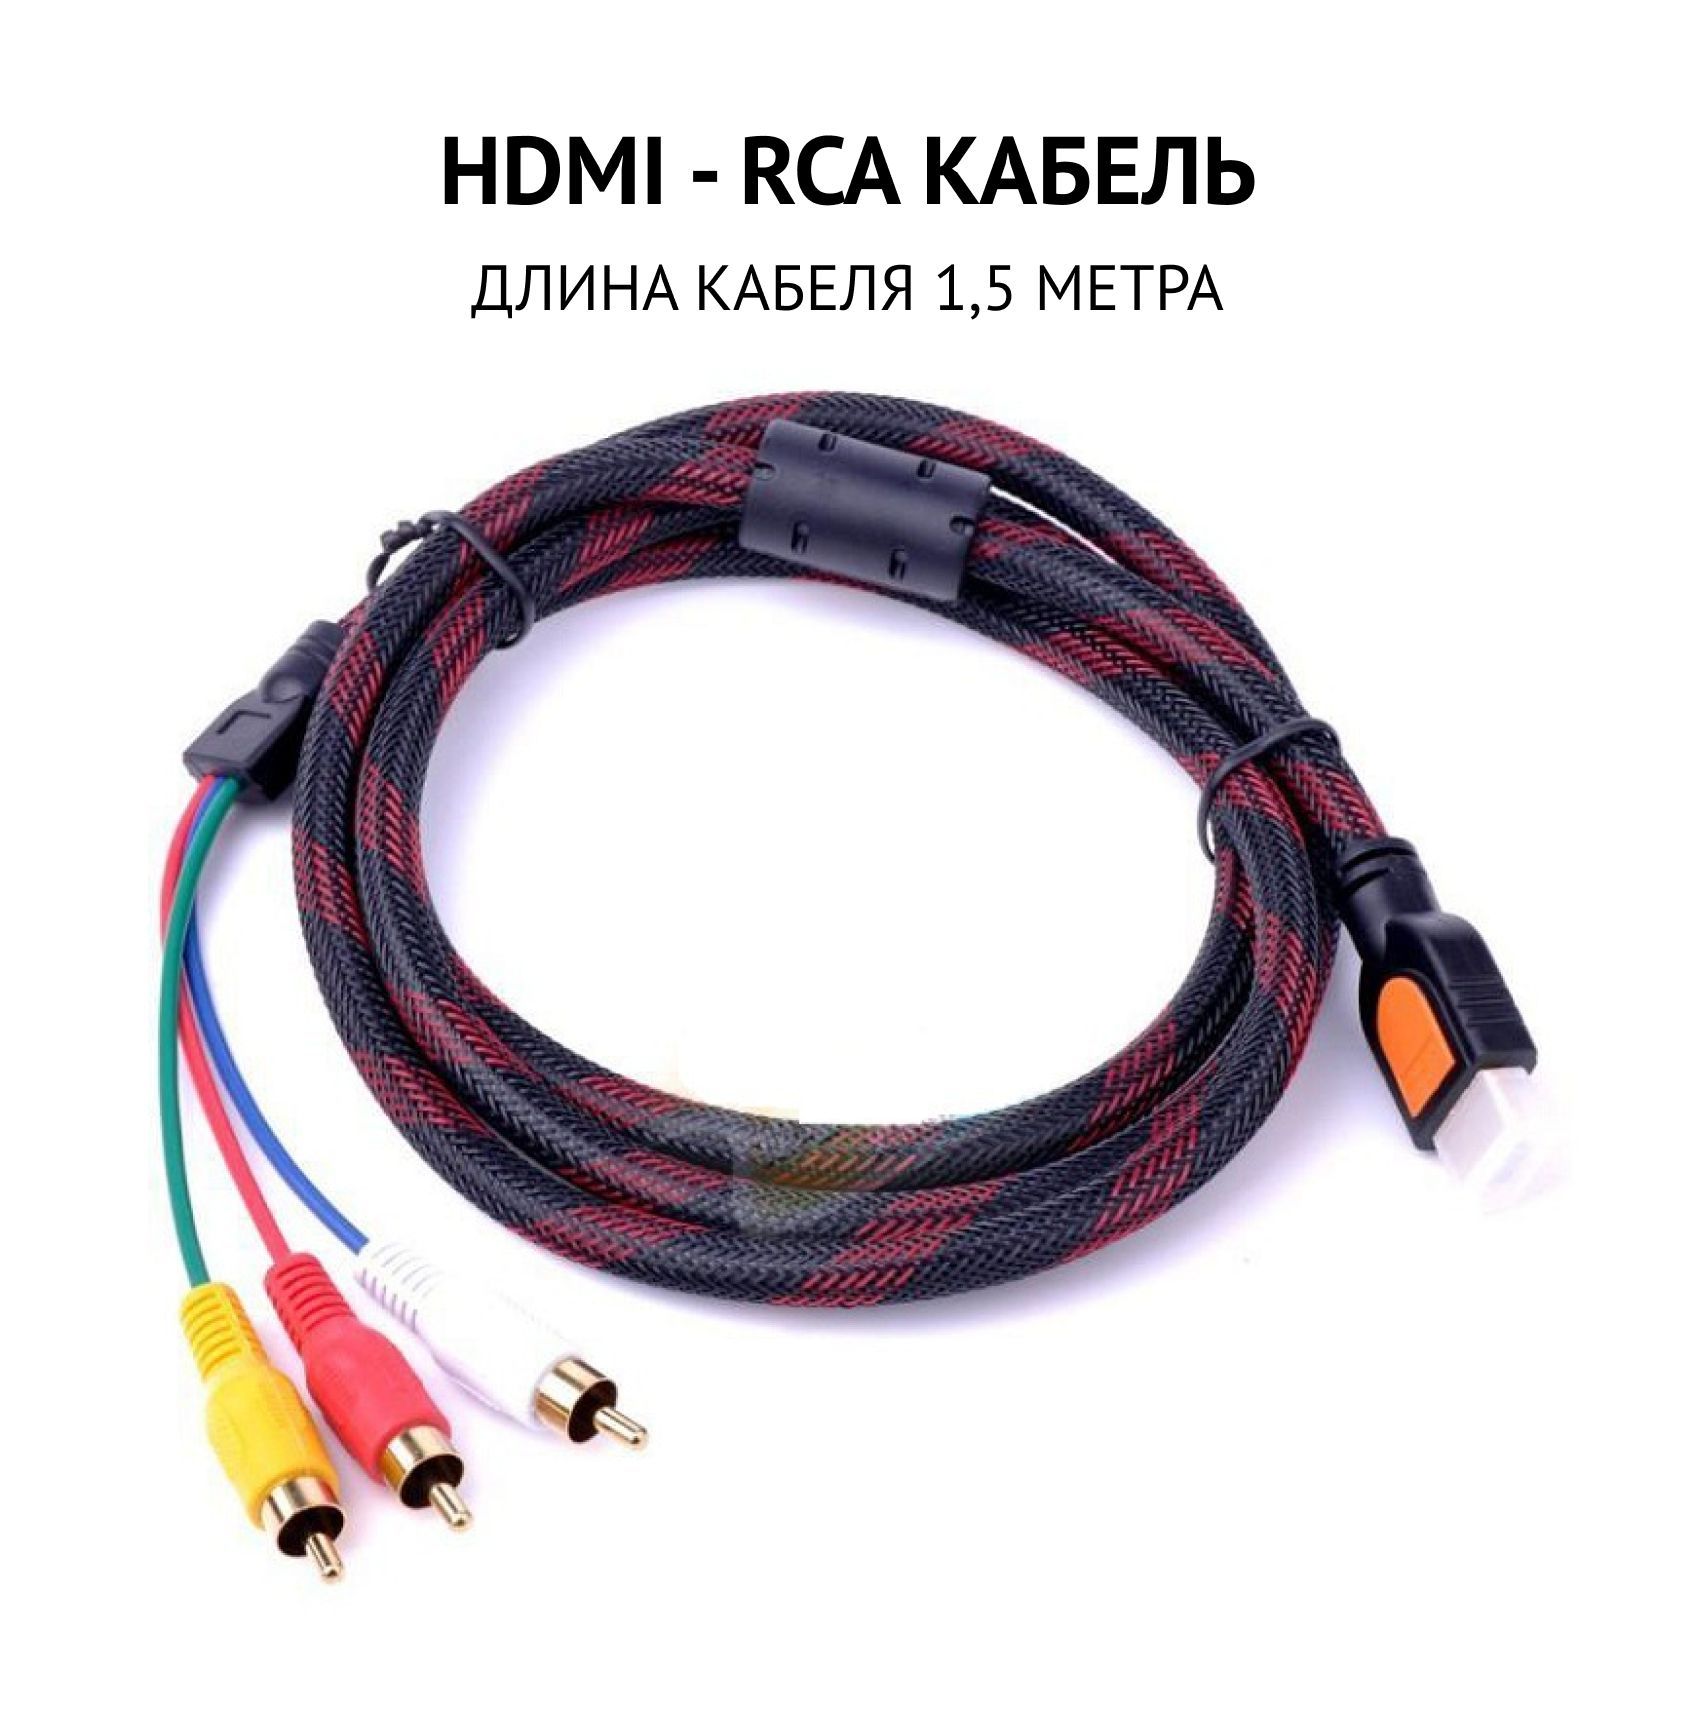 Адаптеры переходники, Scart на VGA, RCA тюльпаны, S-video, или HDMI кабель